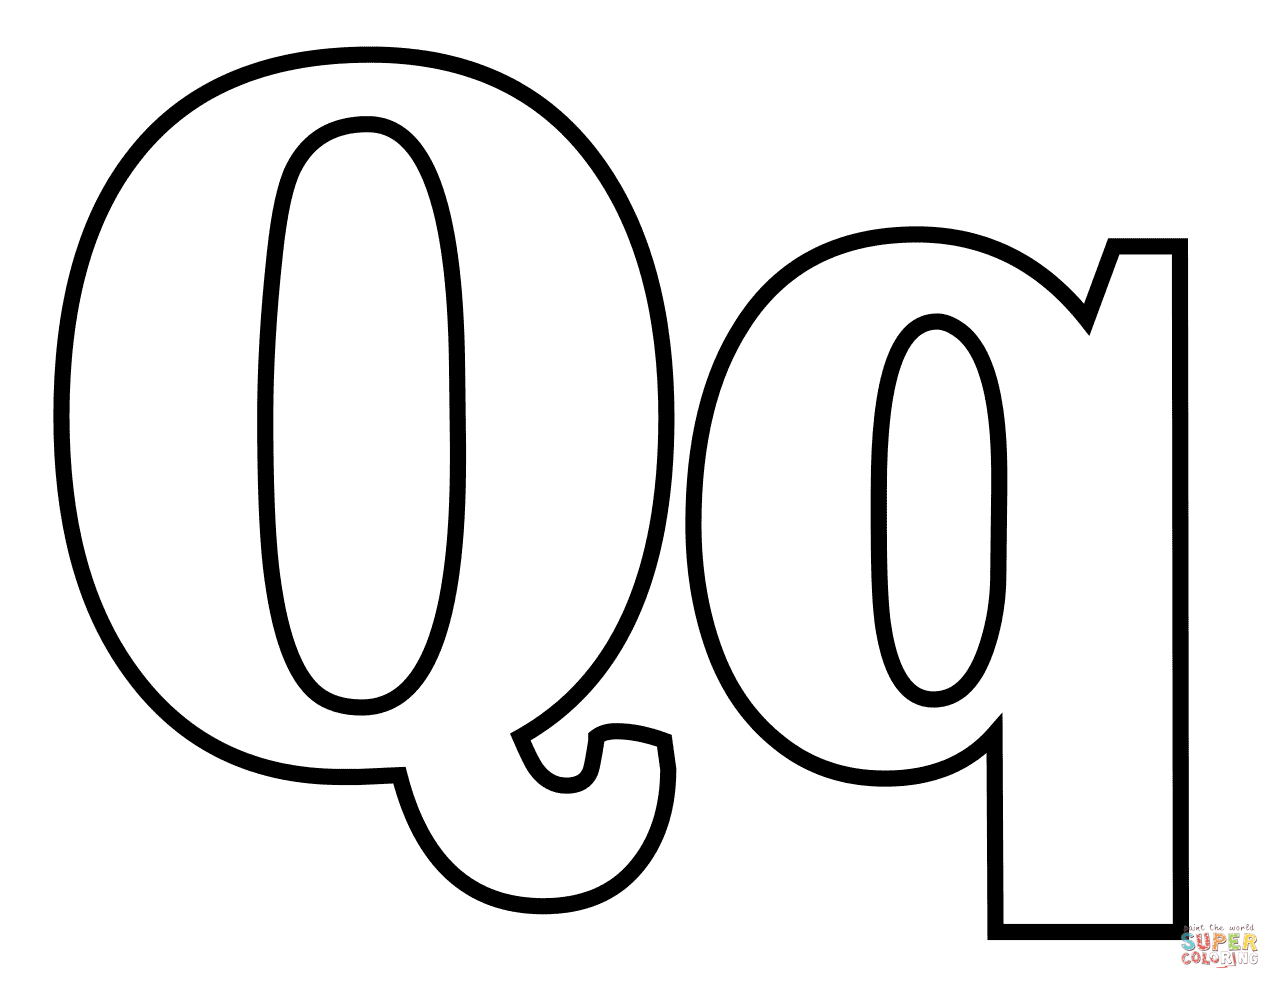 الحرف الكلاسيكي Q من الحرف Q